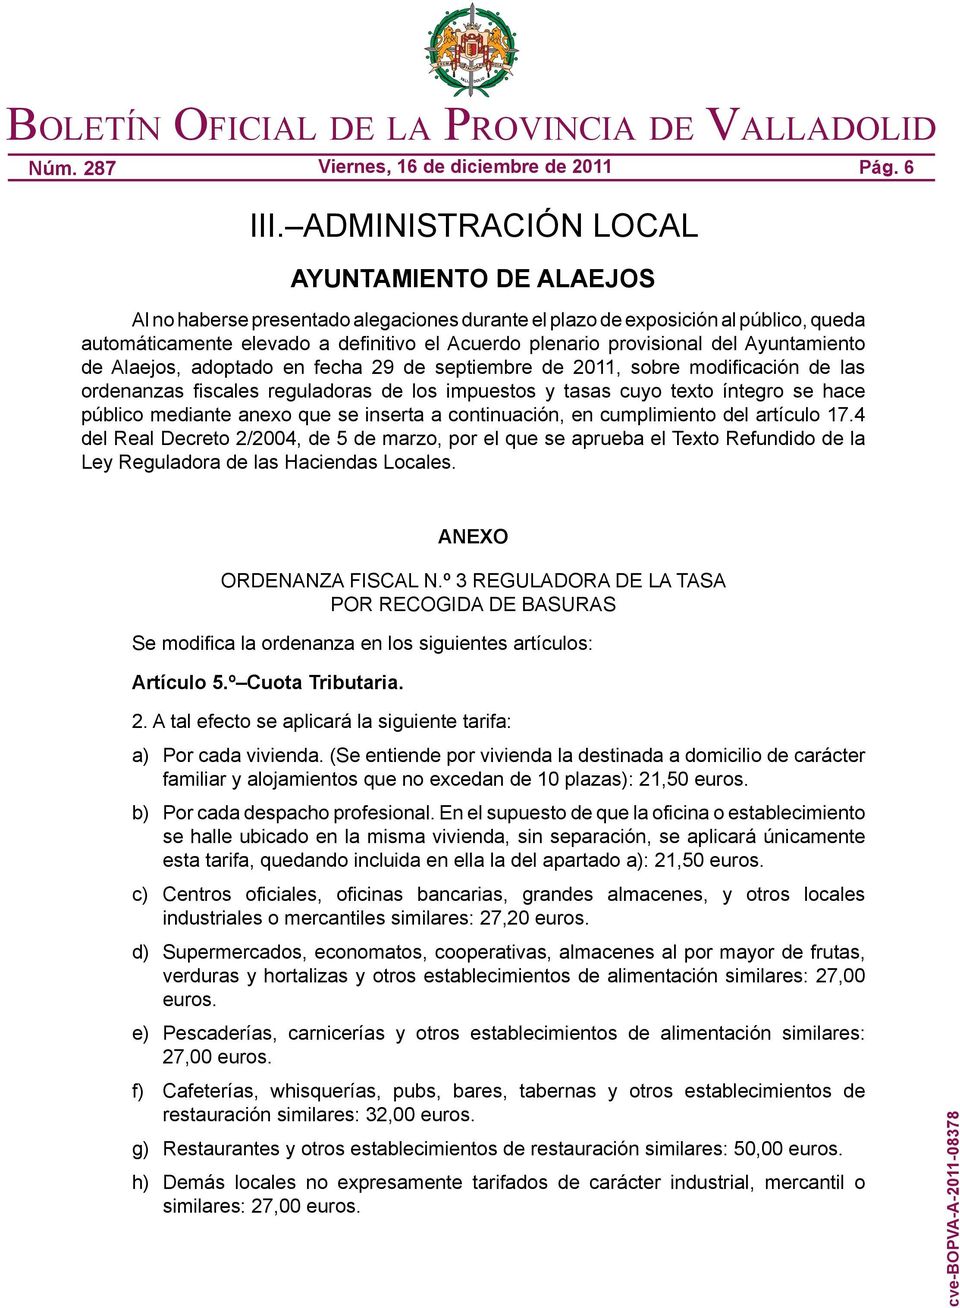 del Ayuntamiento de Alaejos, adoptado en fecha 29 de septiembre de 2011, sobre modificación de las ordenanzas fiscales reguladoras de los impuestos y tasas cuyo texto íntegro se hace público mediante